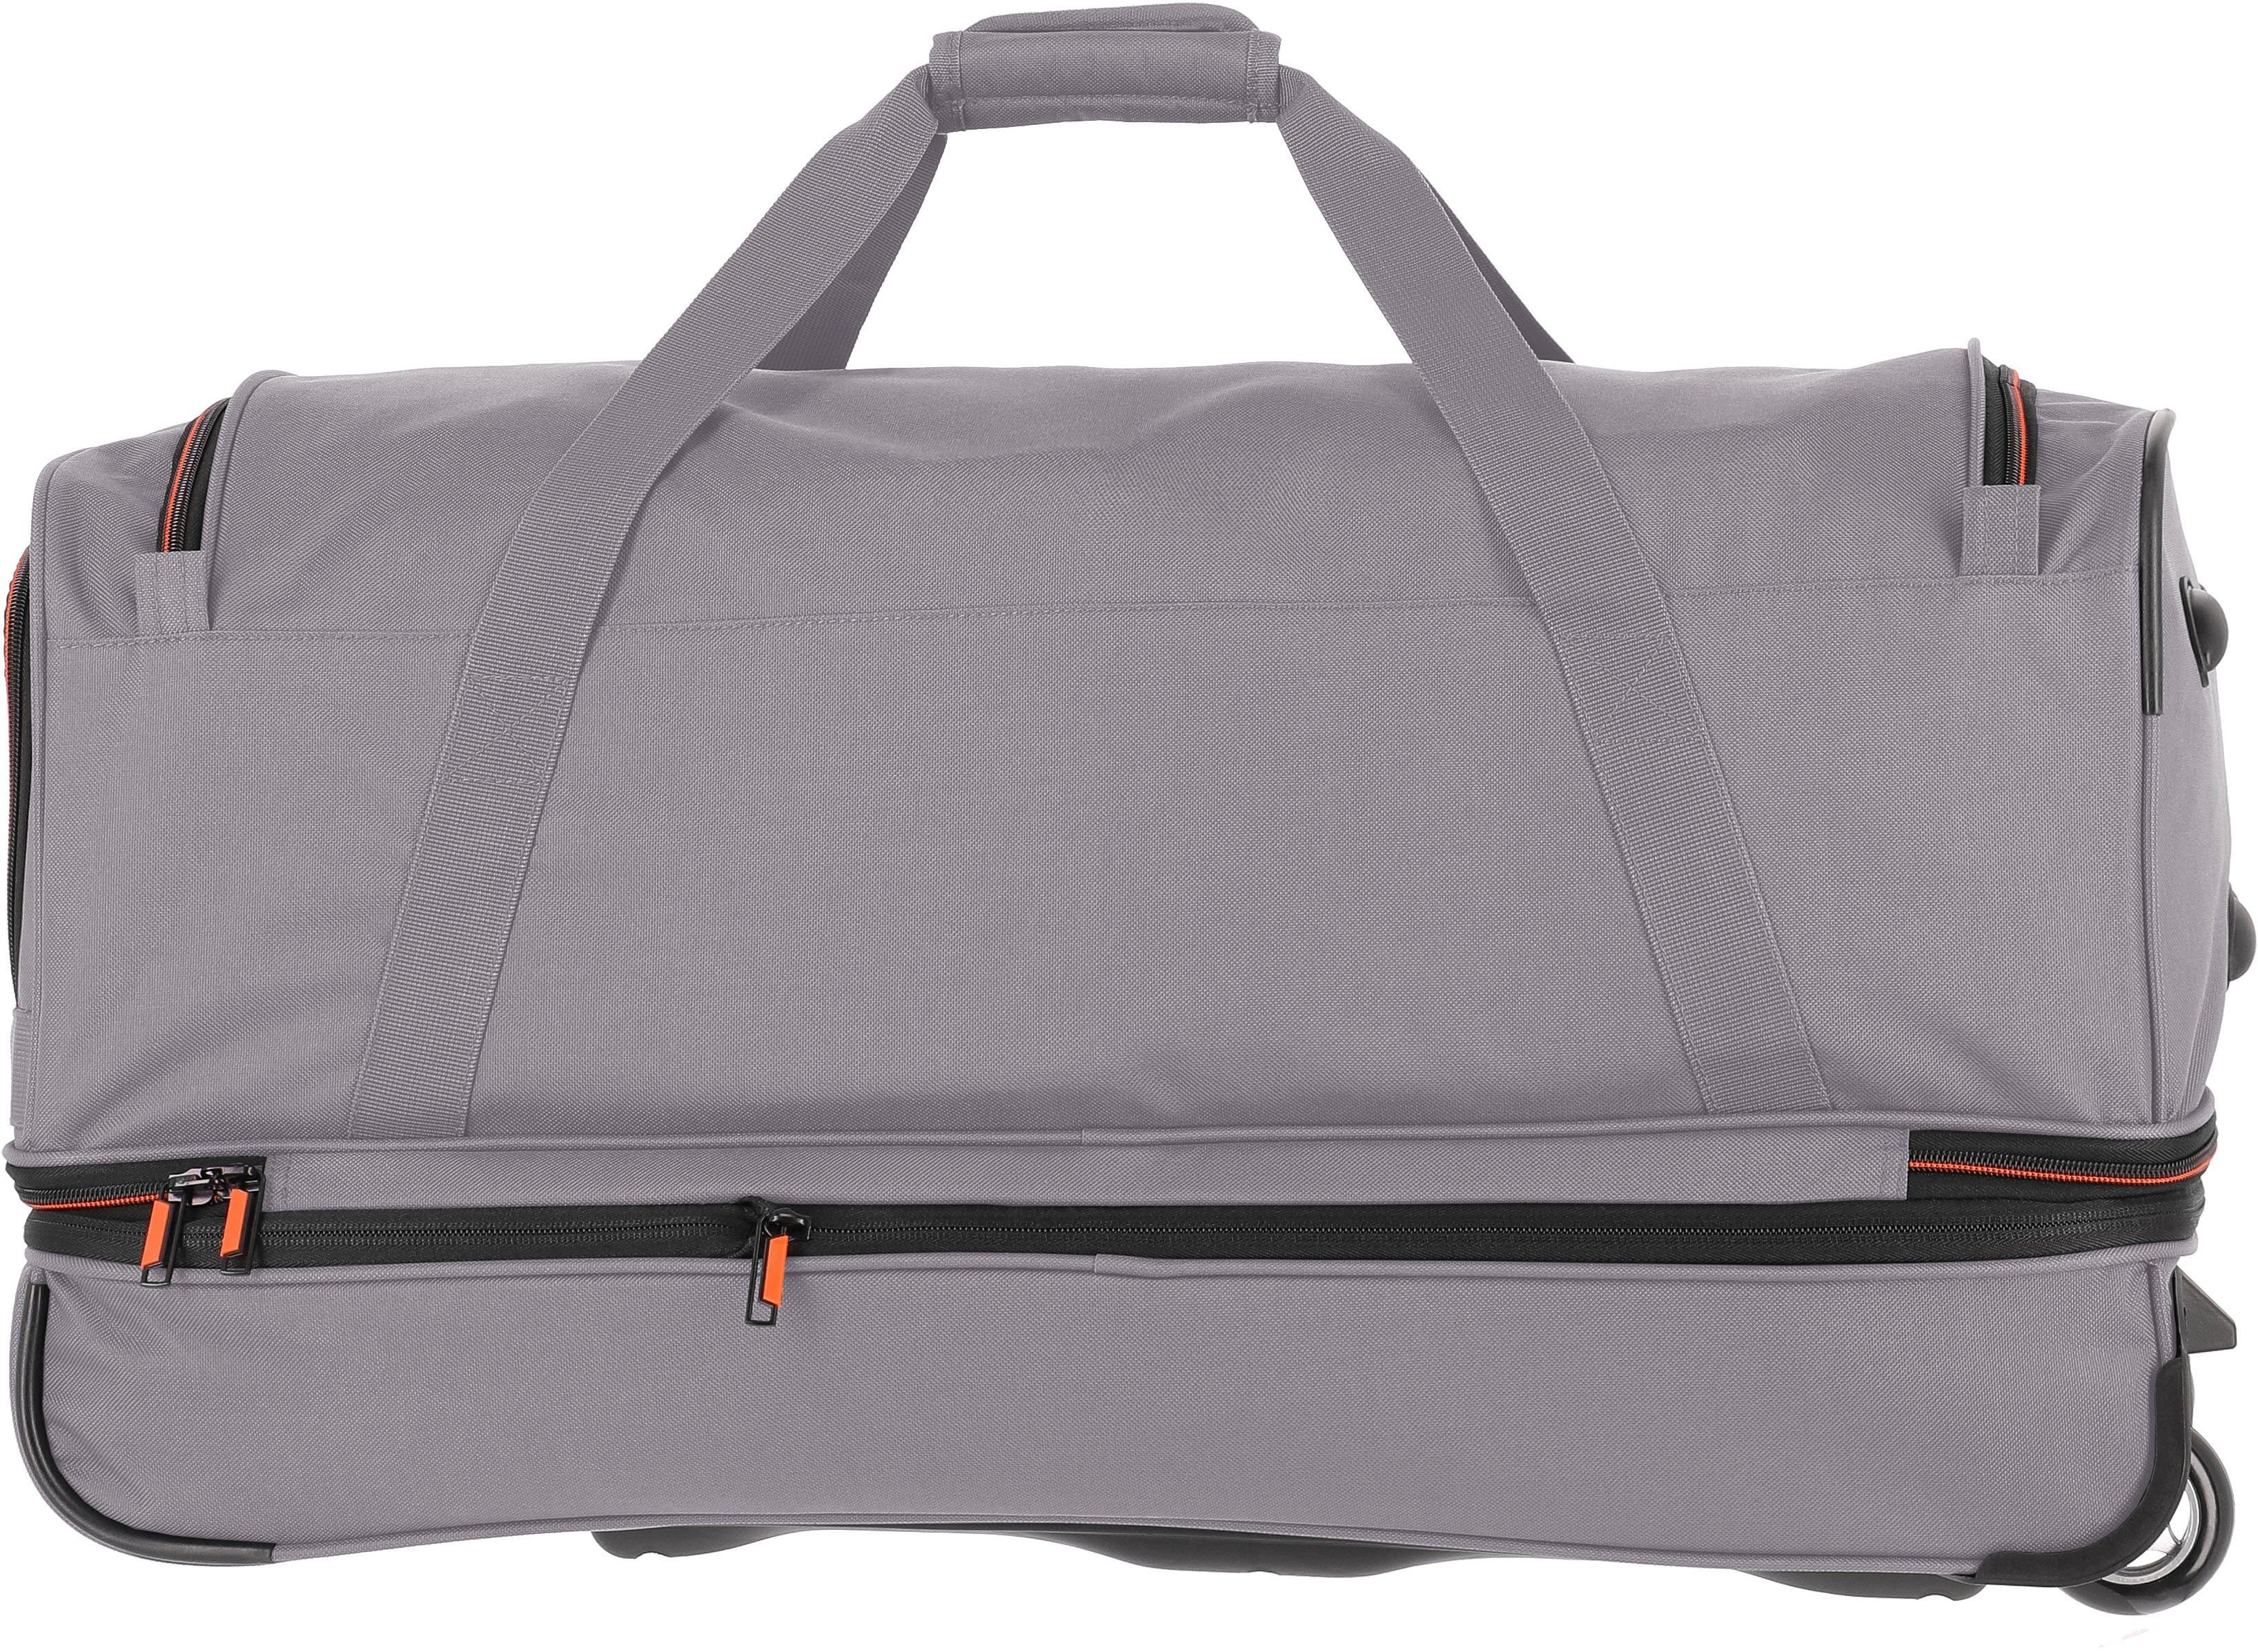 Volumenerweiterung mit travelite Reisetasche 70 cm, grau/orange, und Trolleyfunktion Basics,